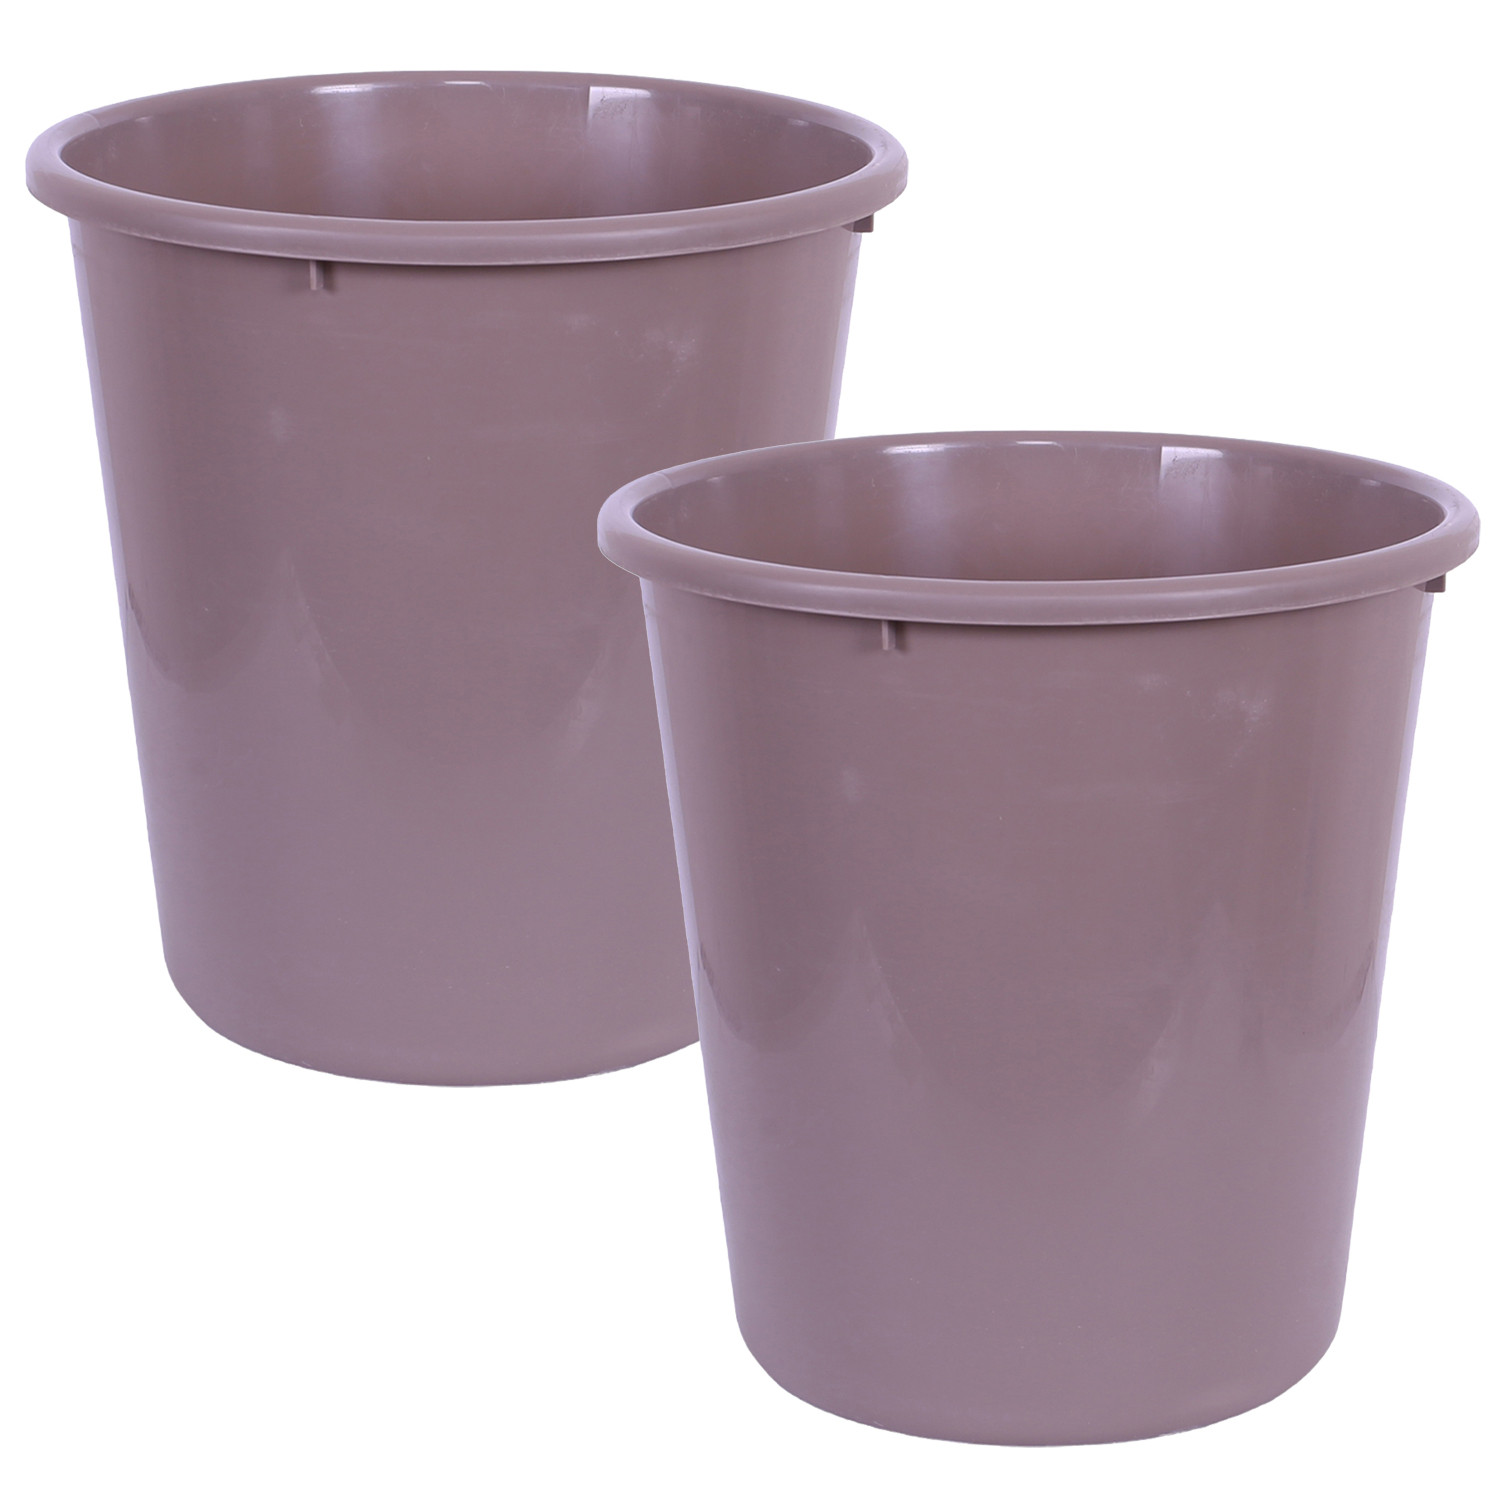 Kuber Industries Dustbin | Open Dustbin | Plastic Garbage Dustbin | Dustbin For Kitchen | Dustbin For Bathroom | Office Dustbin | Plain Sada Dustbin | 13 LTR | Brown